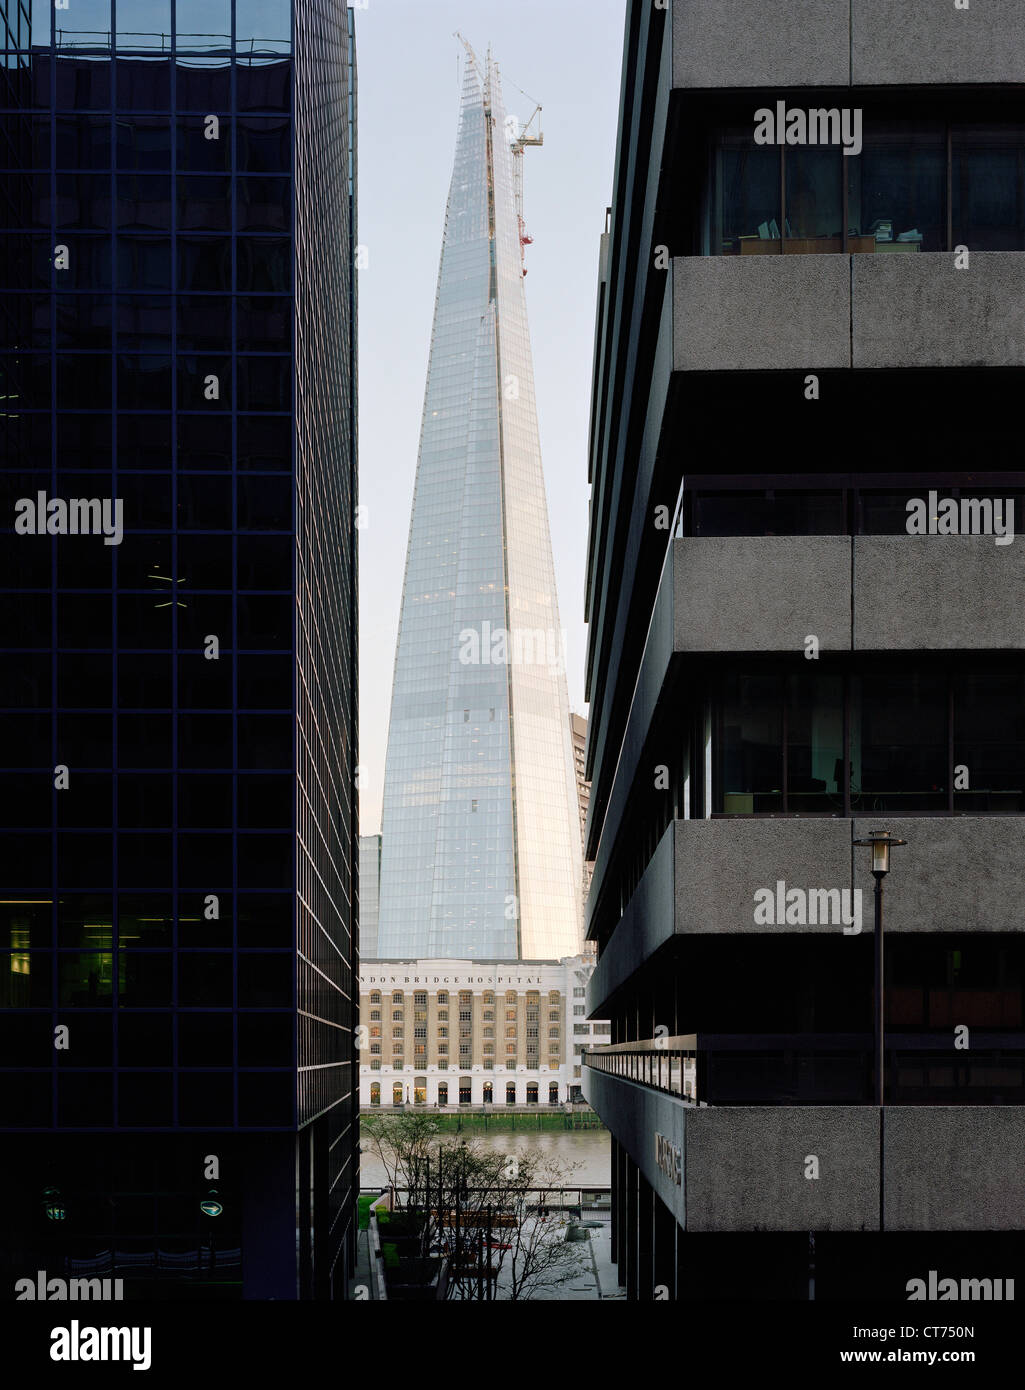 Shard, London, Vereinigtes Königreich. Architekt: Renzo Piano Building Workshop, 2012. Blick vom unteren Thames Street zeigt urban conte Stockfoto